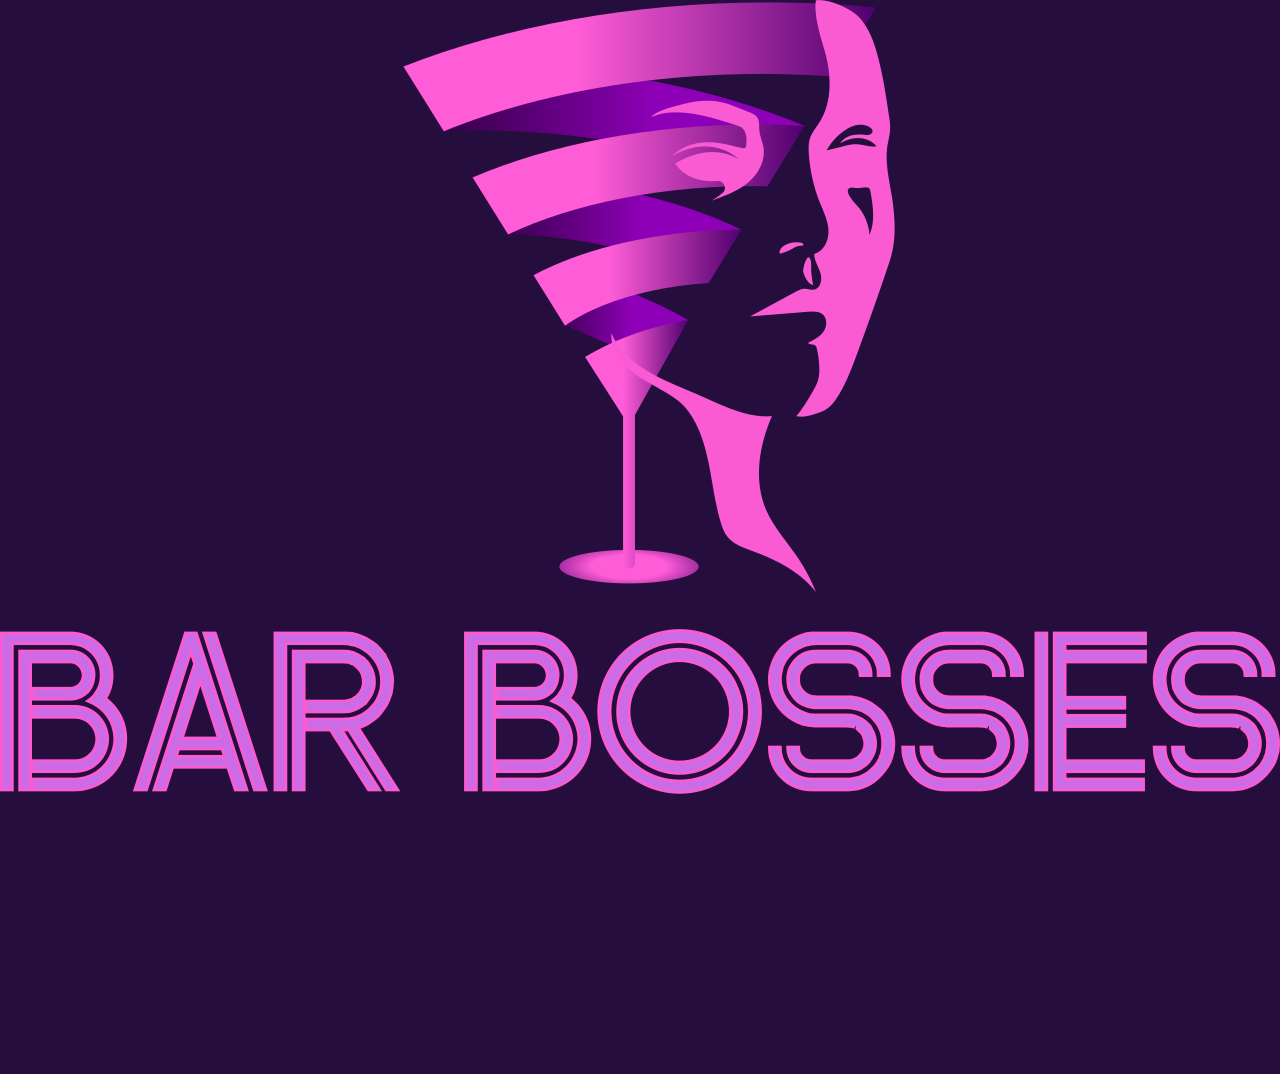 Bar Bosses's logo